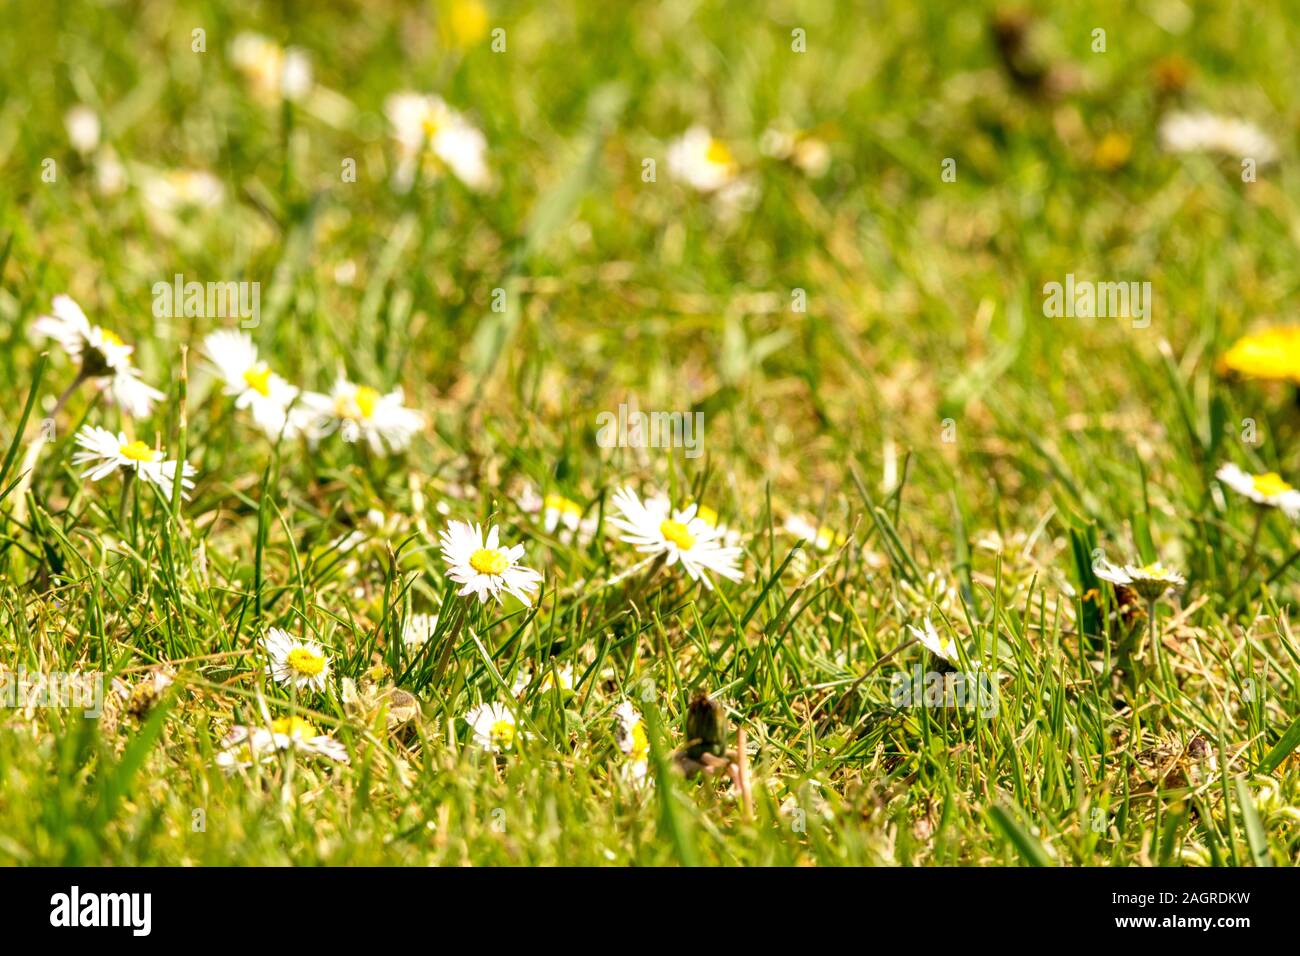 Nur eine kleine Blume, das sehr häufig vorkommt, aber von der Eine bringt  Glück und Freude zu Sommer Stockfotografie - Alamy